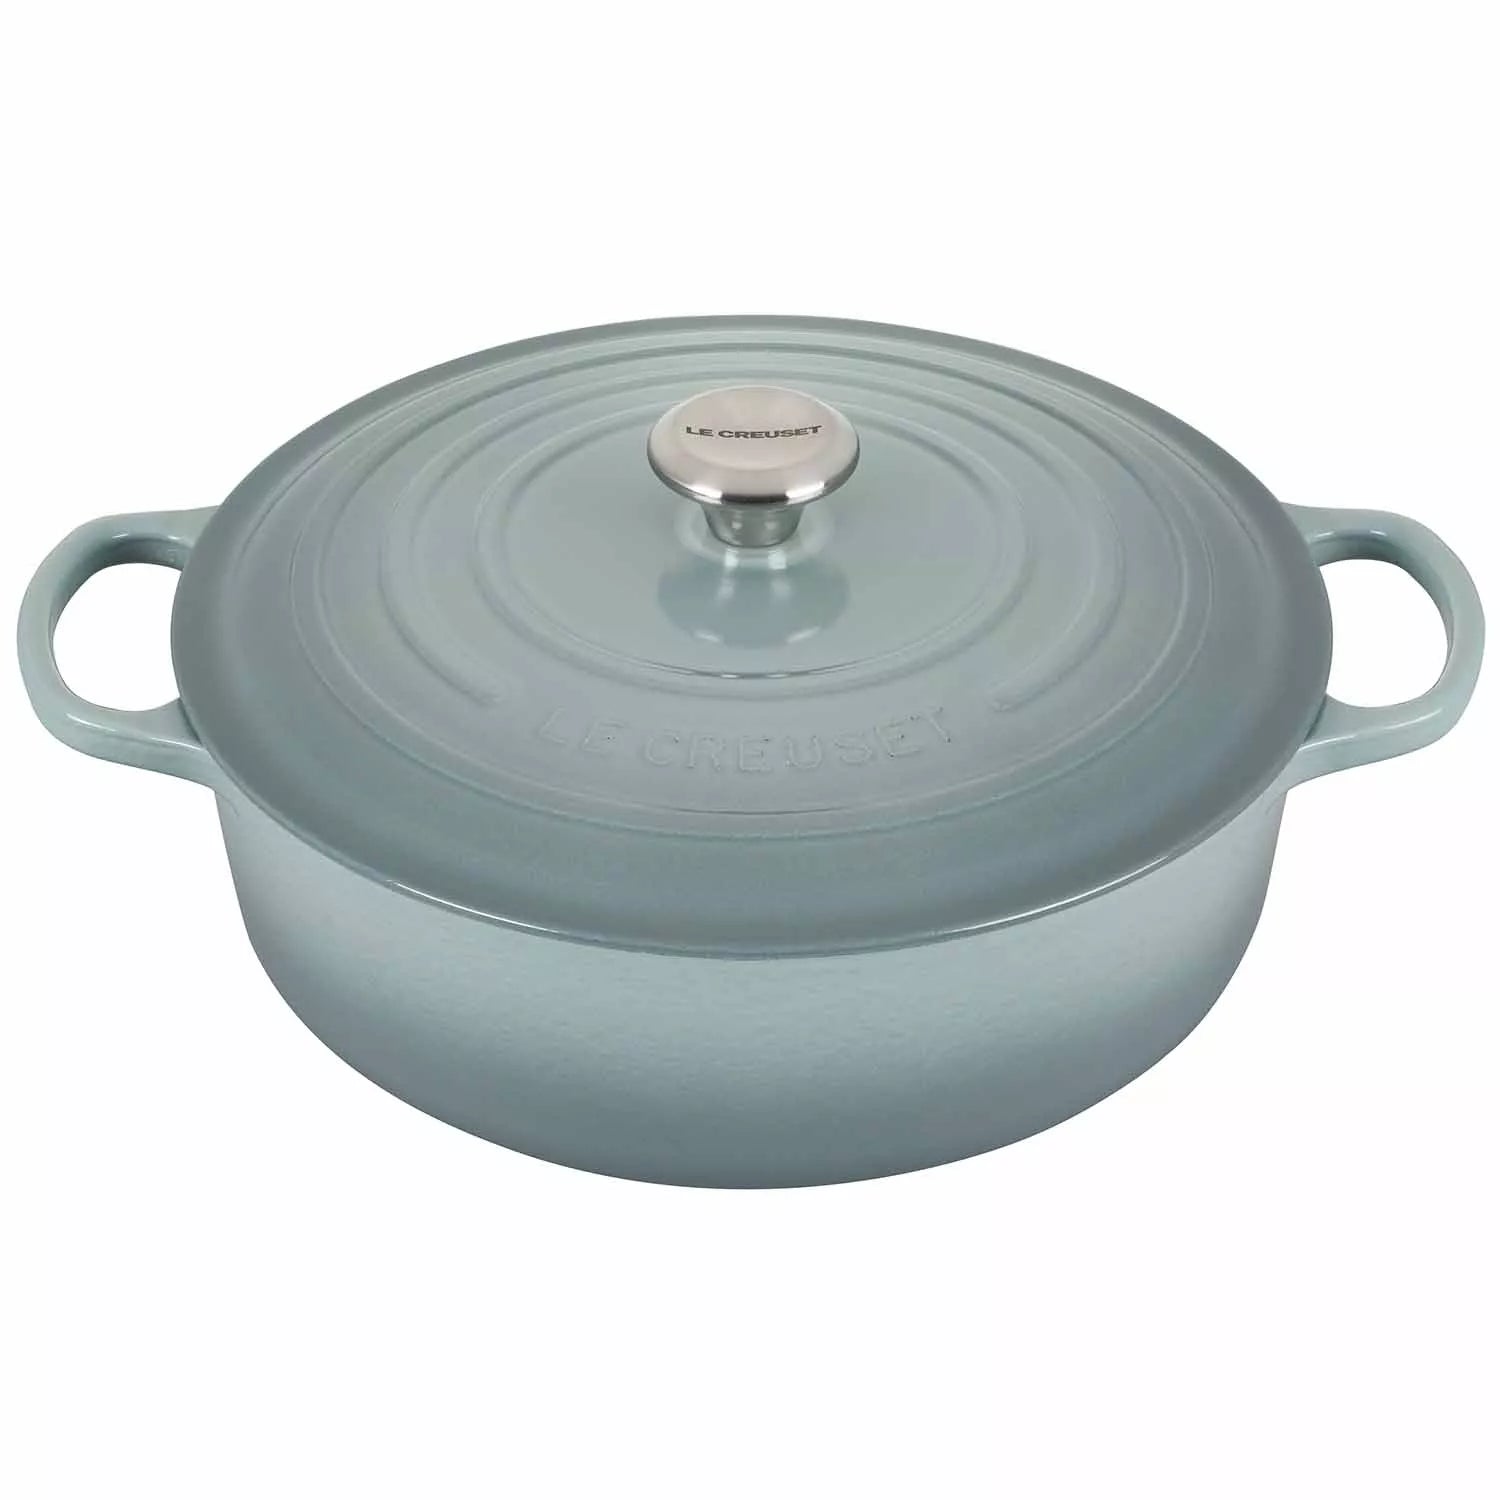 Le Creuset Wide Round Oven – SPECIAL – 6.5 QT – Sea Salt